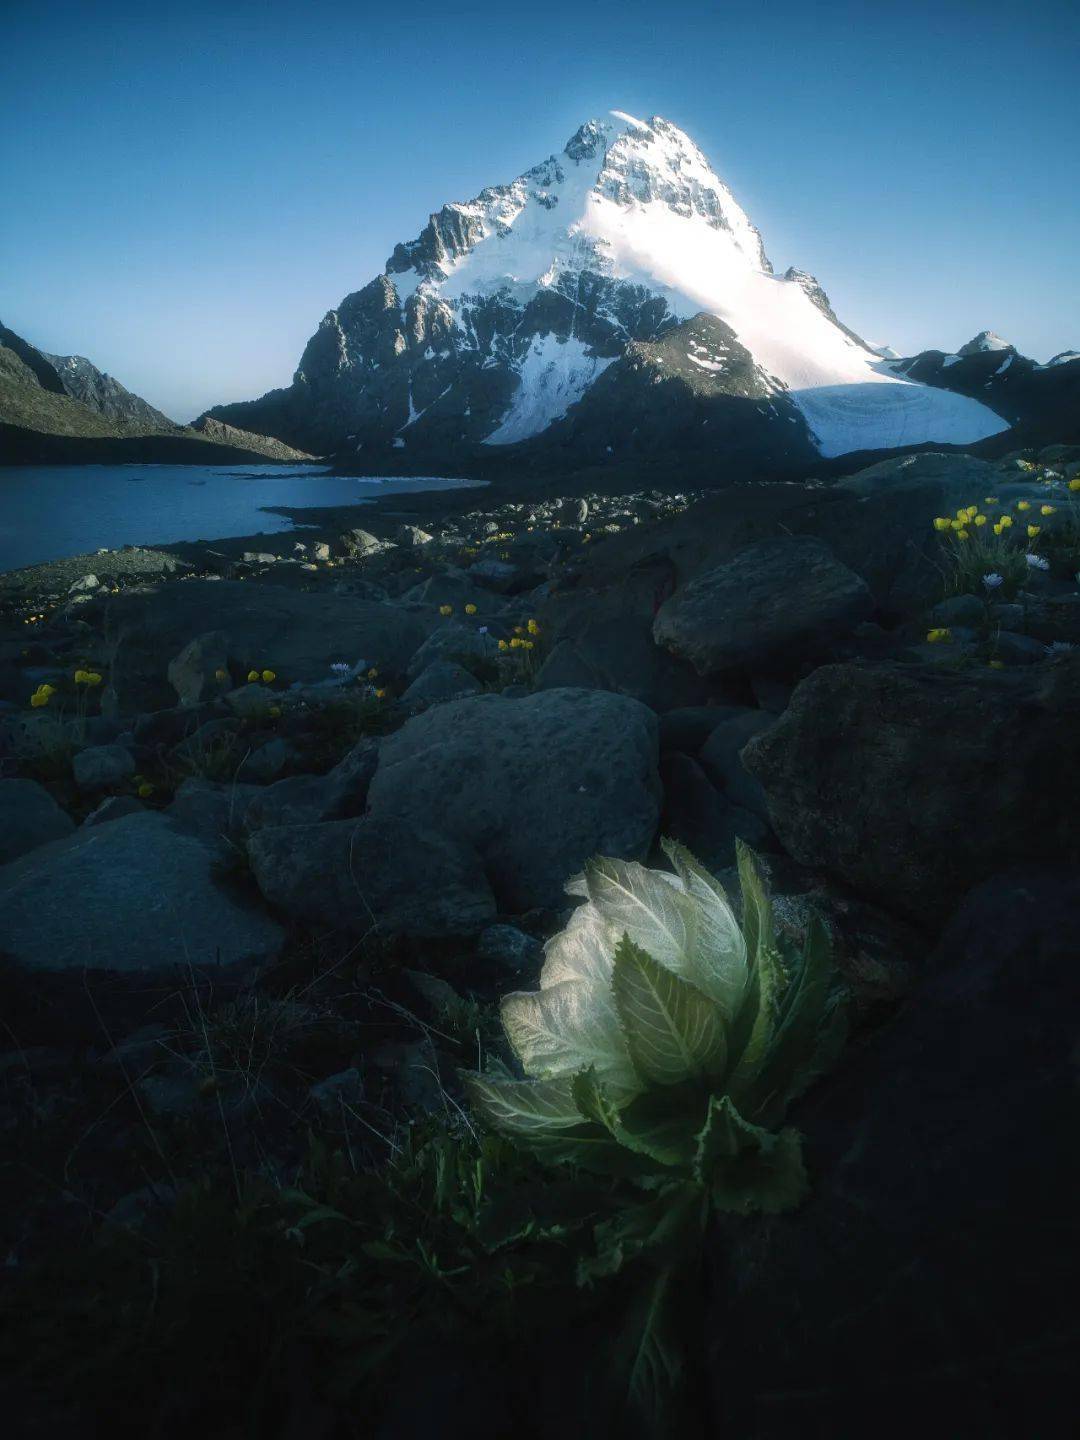 传说中的天山雪莲也在此生长,它们在零下几十度的高山严寒和极度缺氧